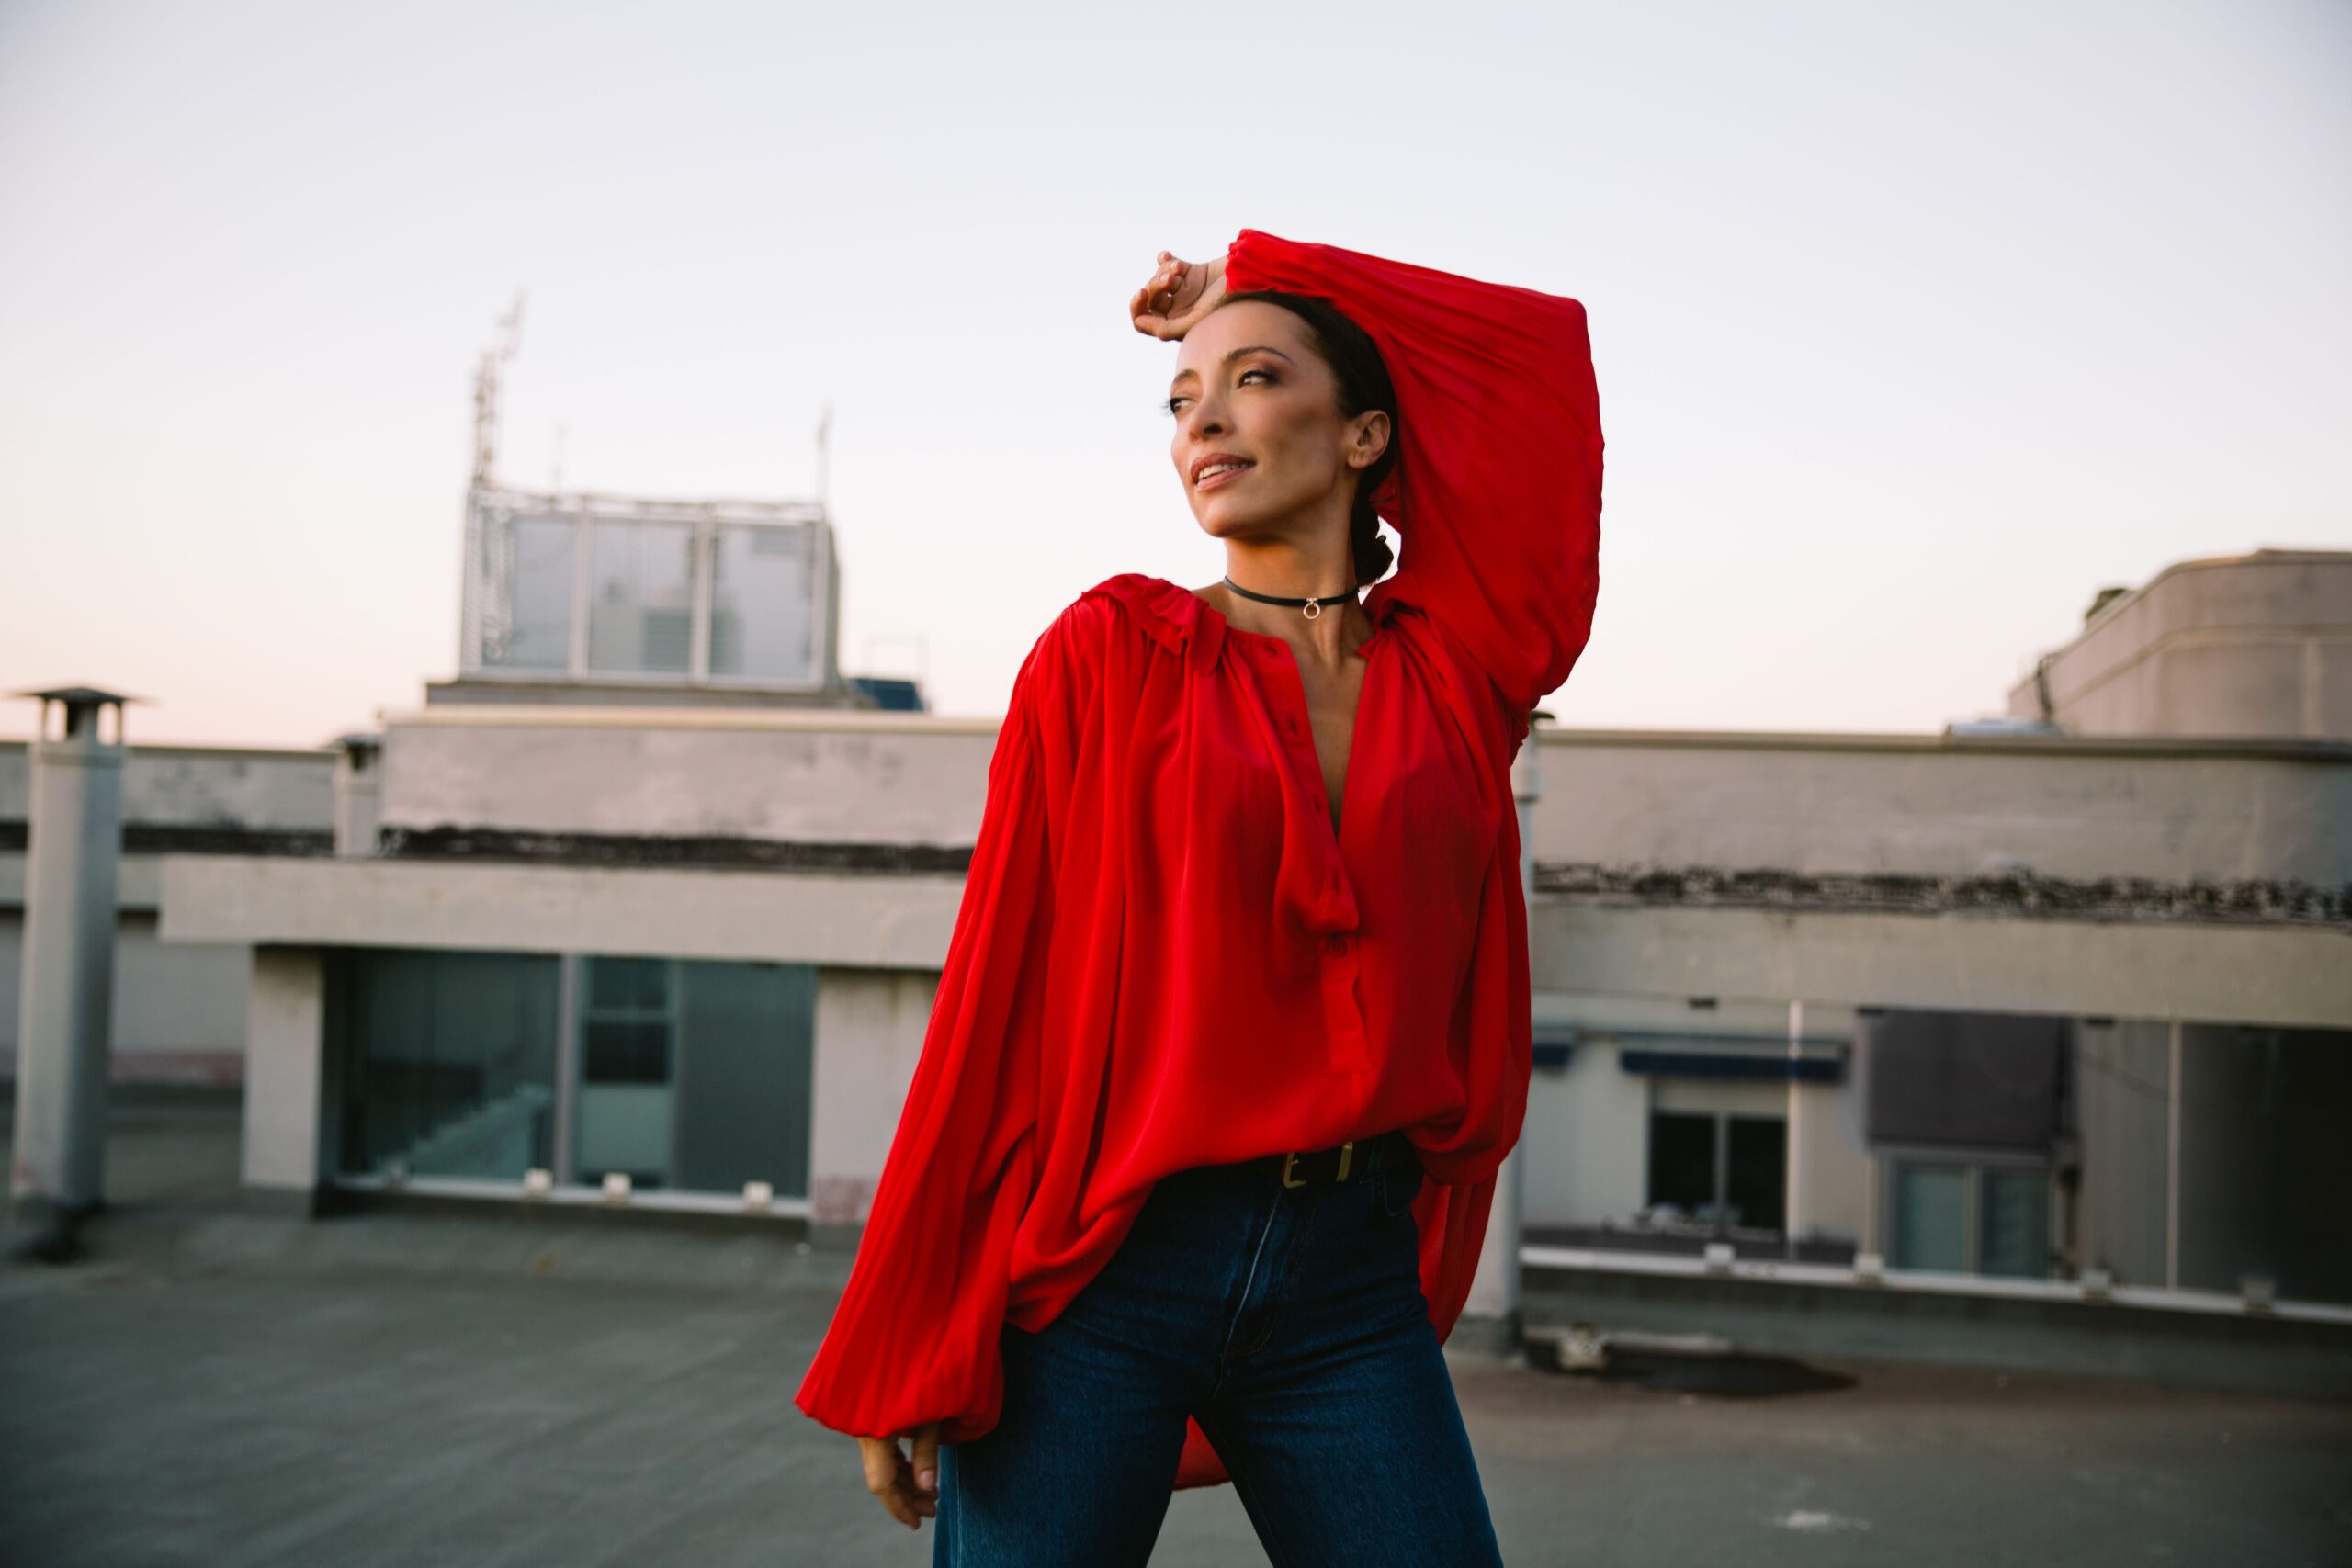 Francesca Maria presenta il suo nuovo singolo Sunshine Walking  “Ritrovare sé stessi camminando nel sole” – un messaggio di speranza al popolo marchigiano